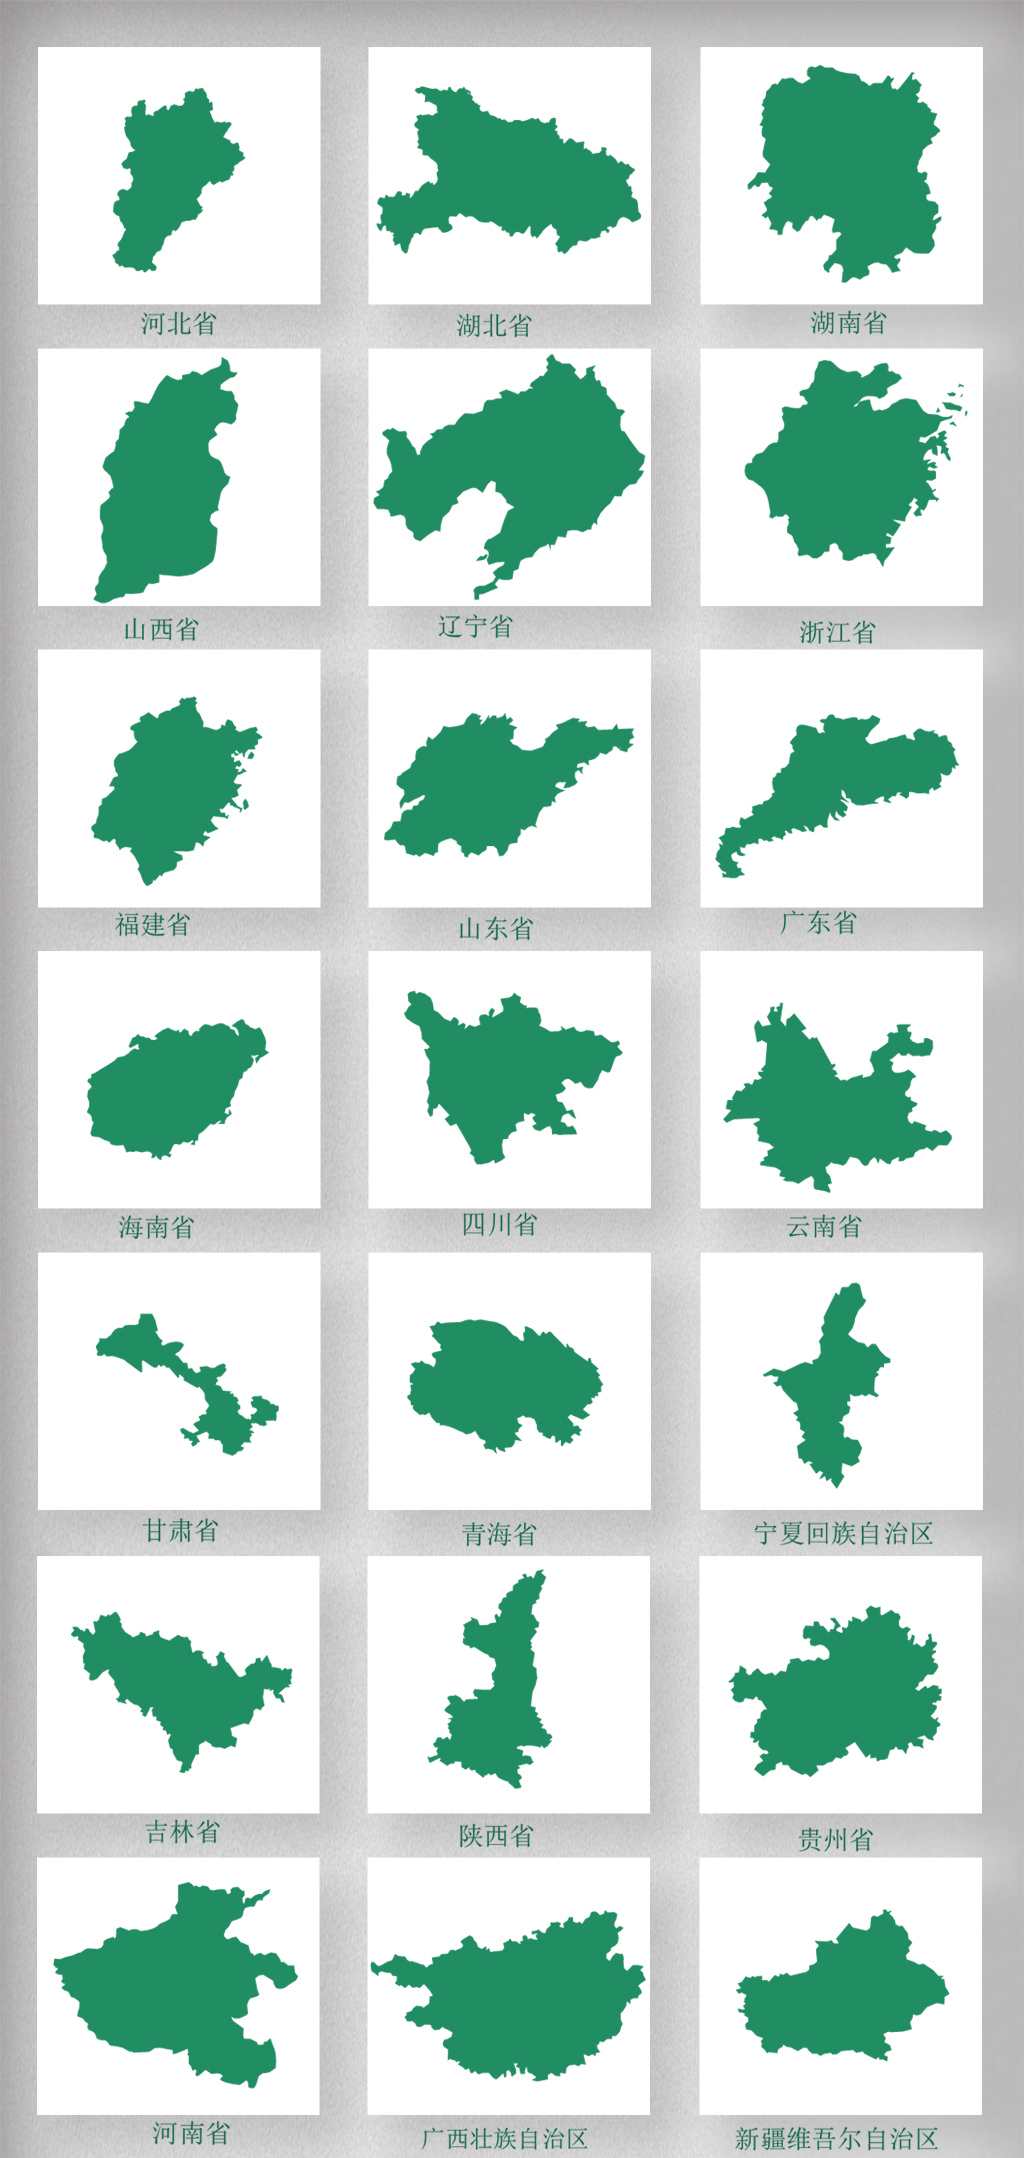 中国各省市地区分布地图npg素材图片